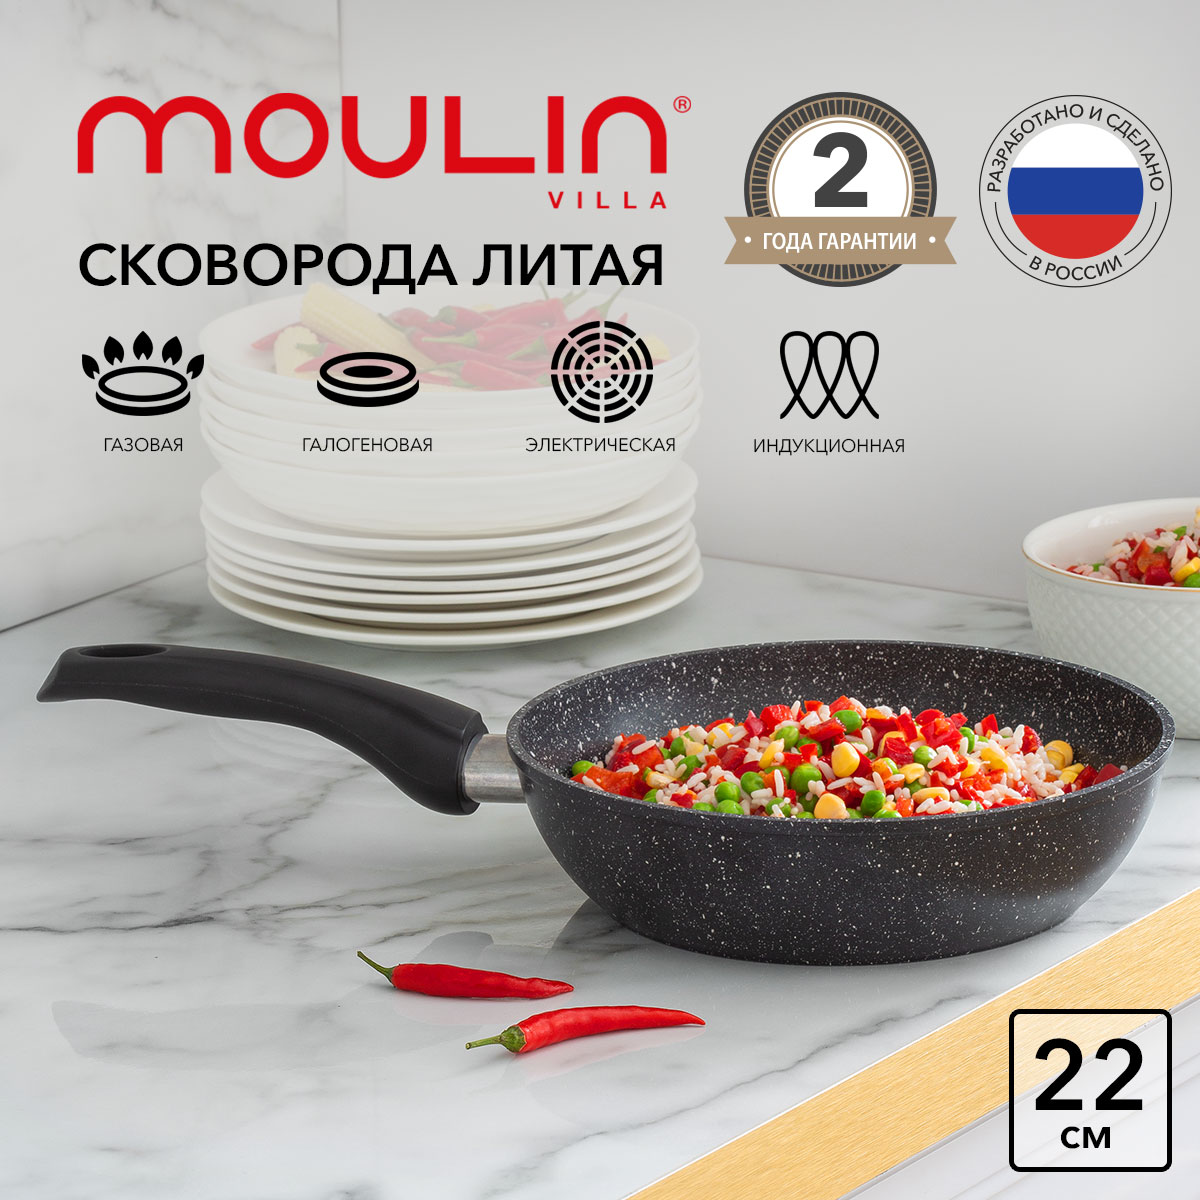 Сковорода антипригарная Moulin Villa Impression TM-22-DI индукция 22 см купить в интернет-магазине, цены на Мегамаркет